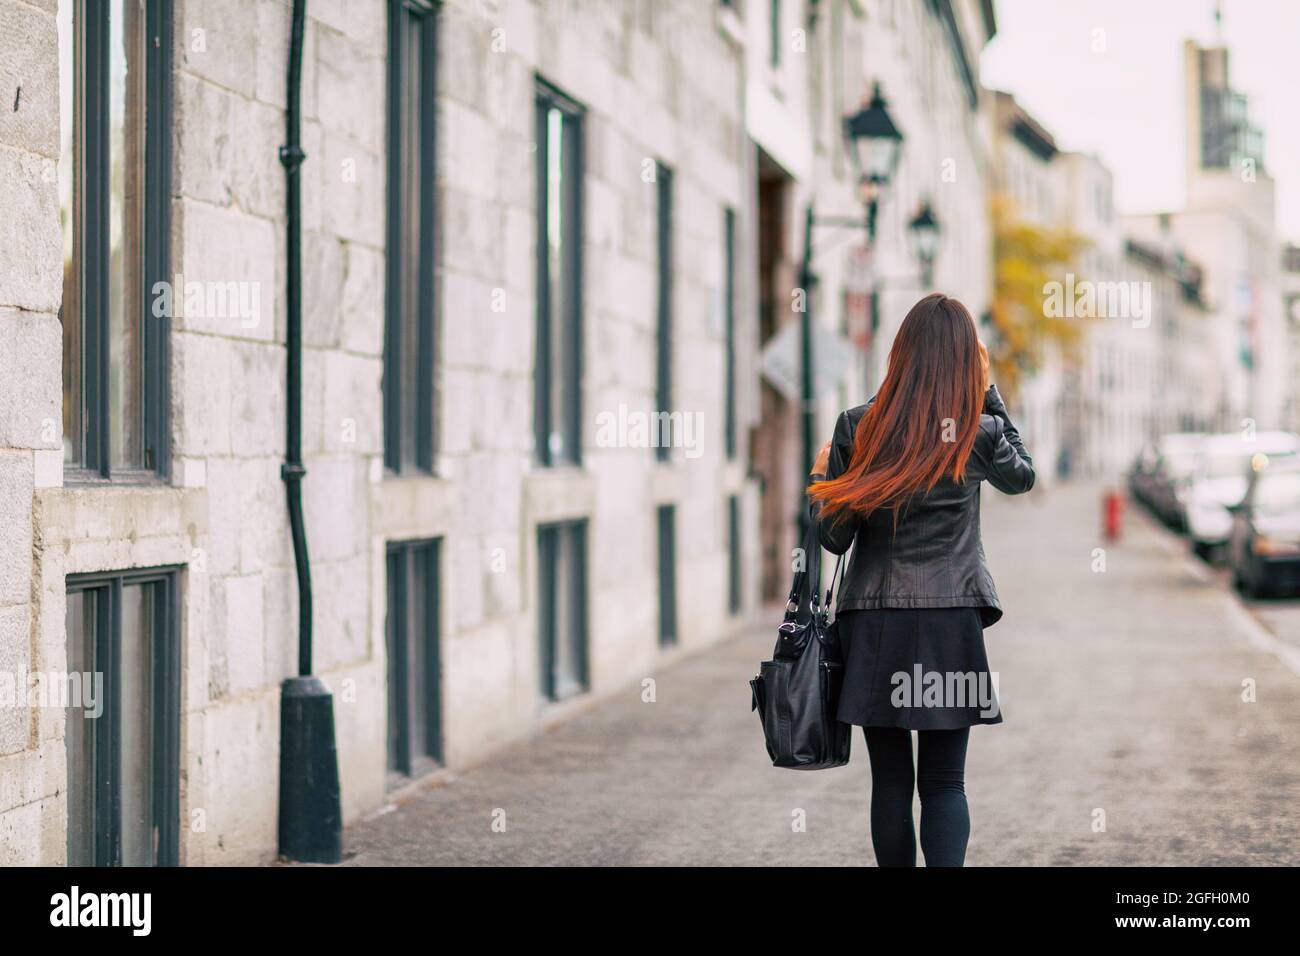 Ombre hair coloring donna che cammina con la fine dei capelli con colore marrone chiaro. Stile di vita urbano giovani con acconciature tinte Foto Stock